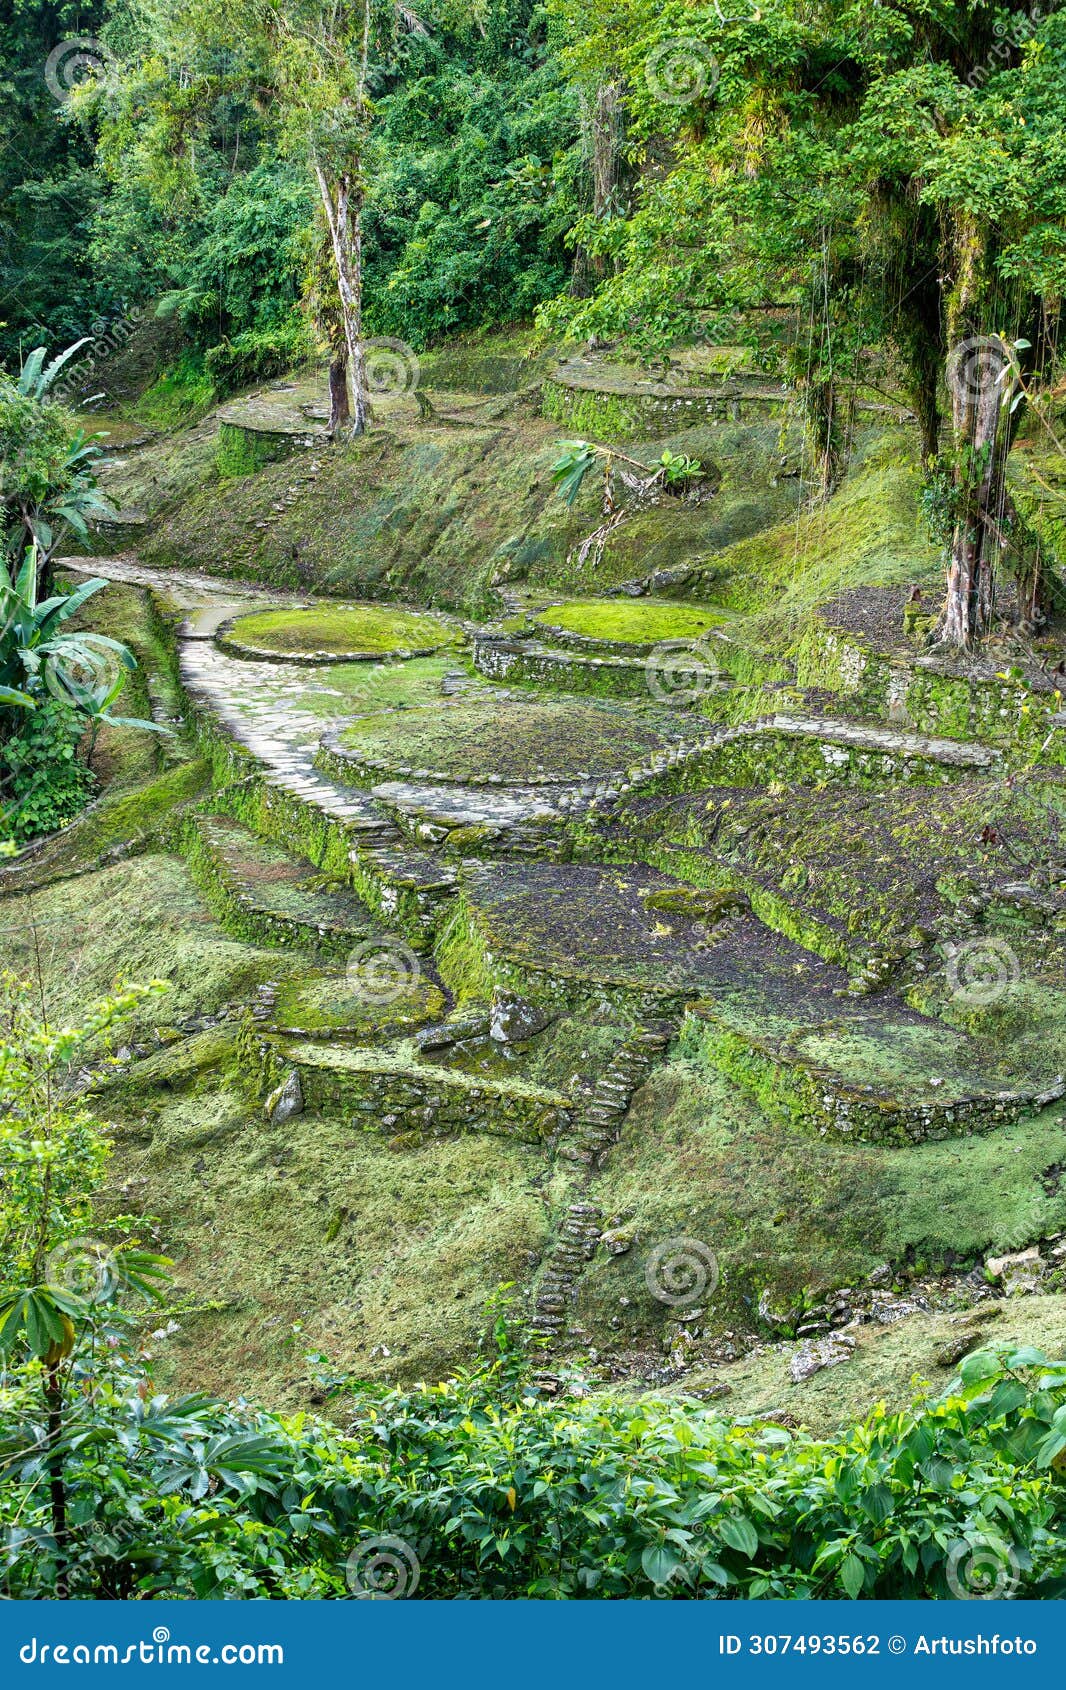 ciudad perdida, ancient ruins in sierra nevada mountains. santa marta, colombia wilderness